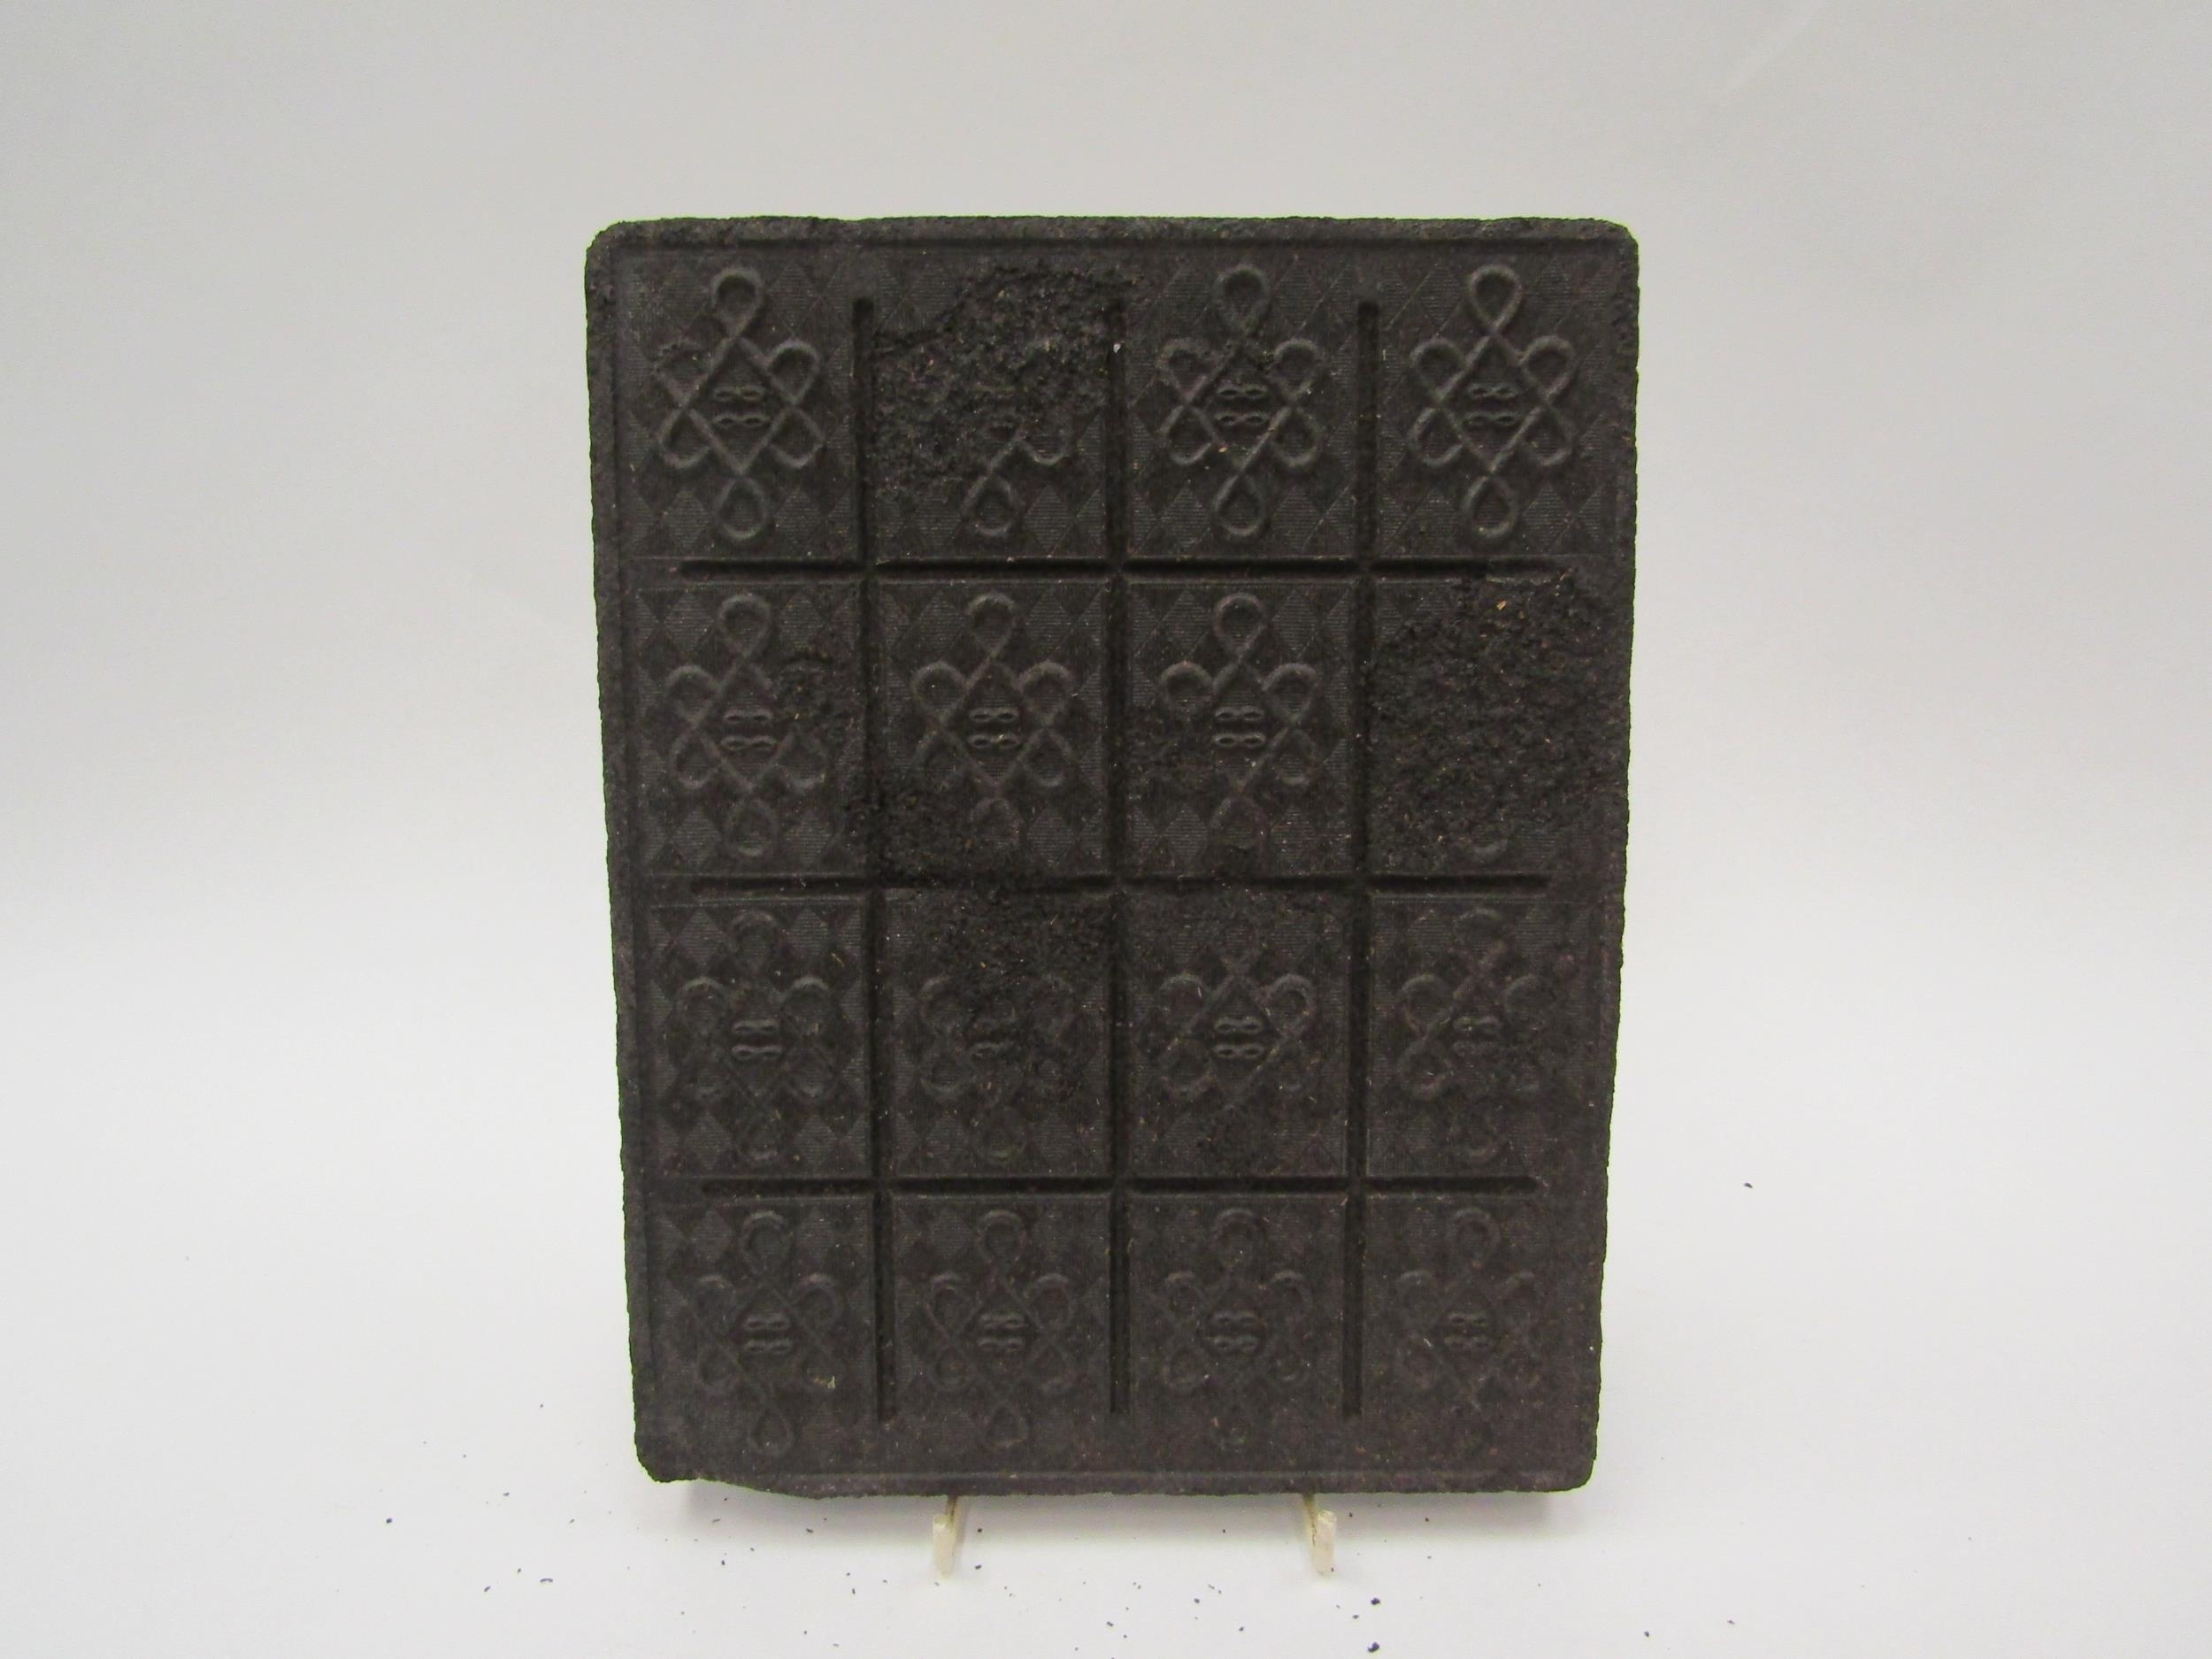 A 19th Century compressed tea brick, 19cm x 24cm